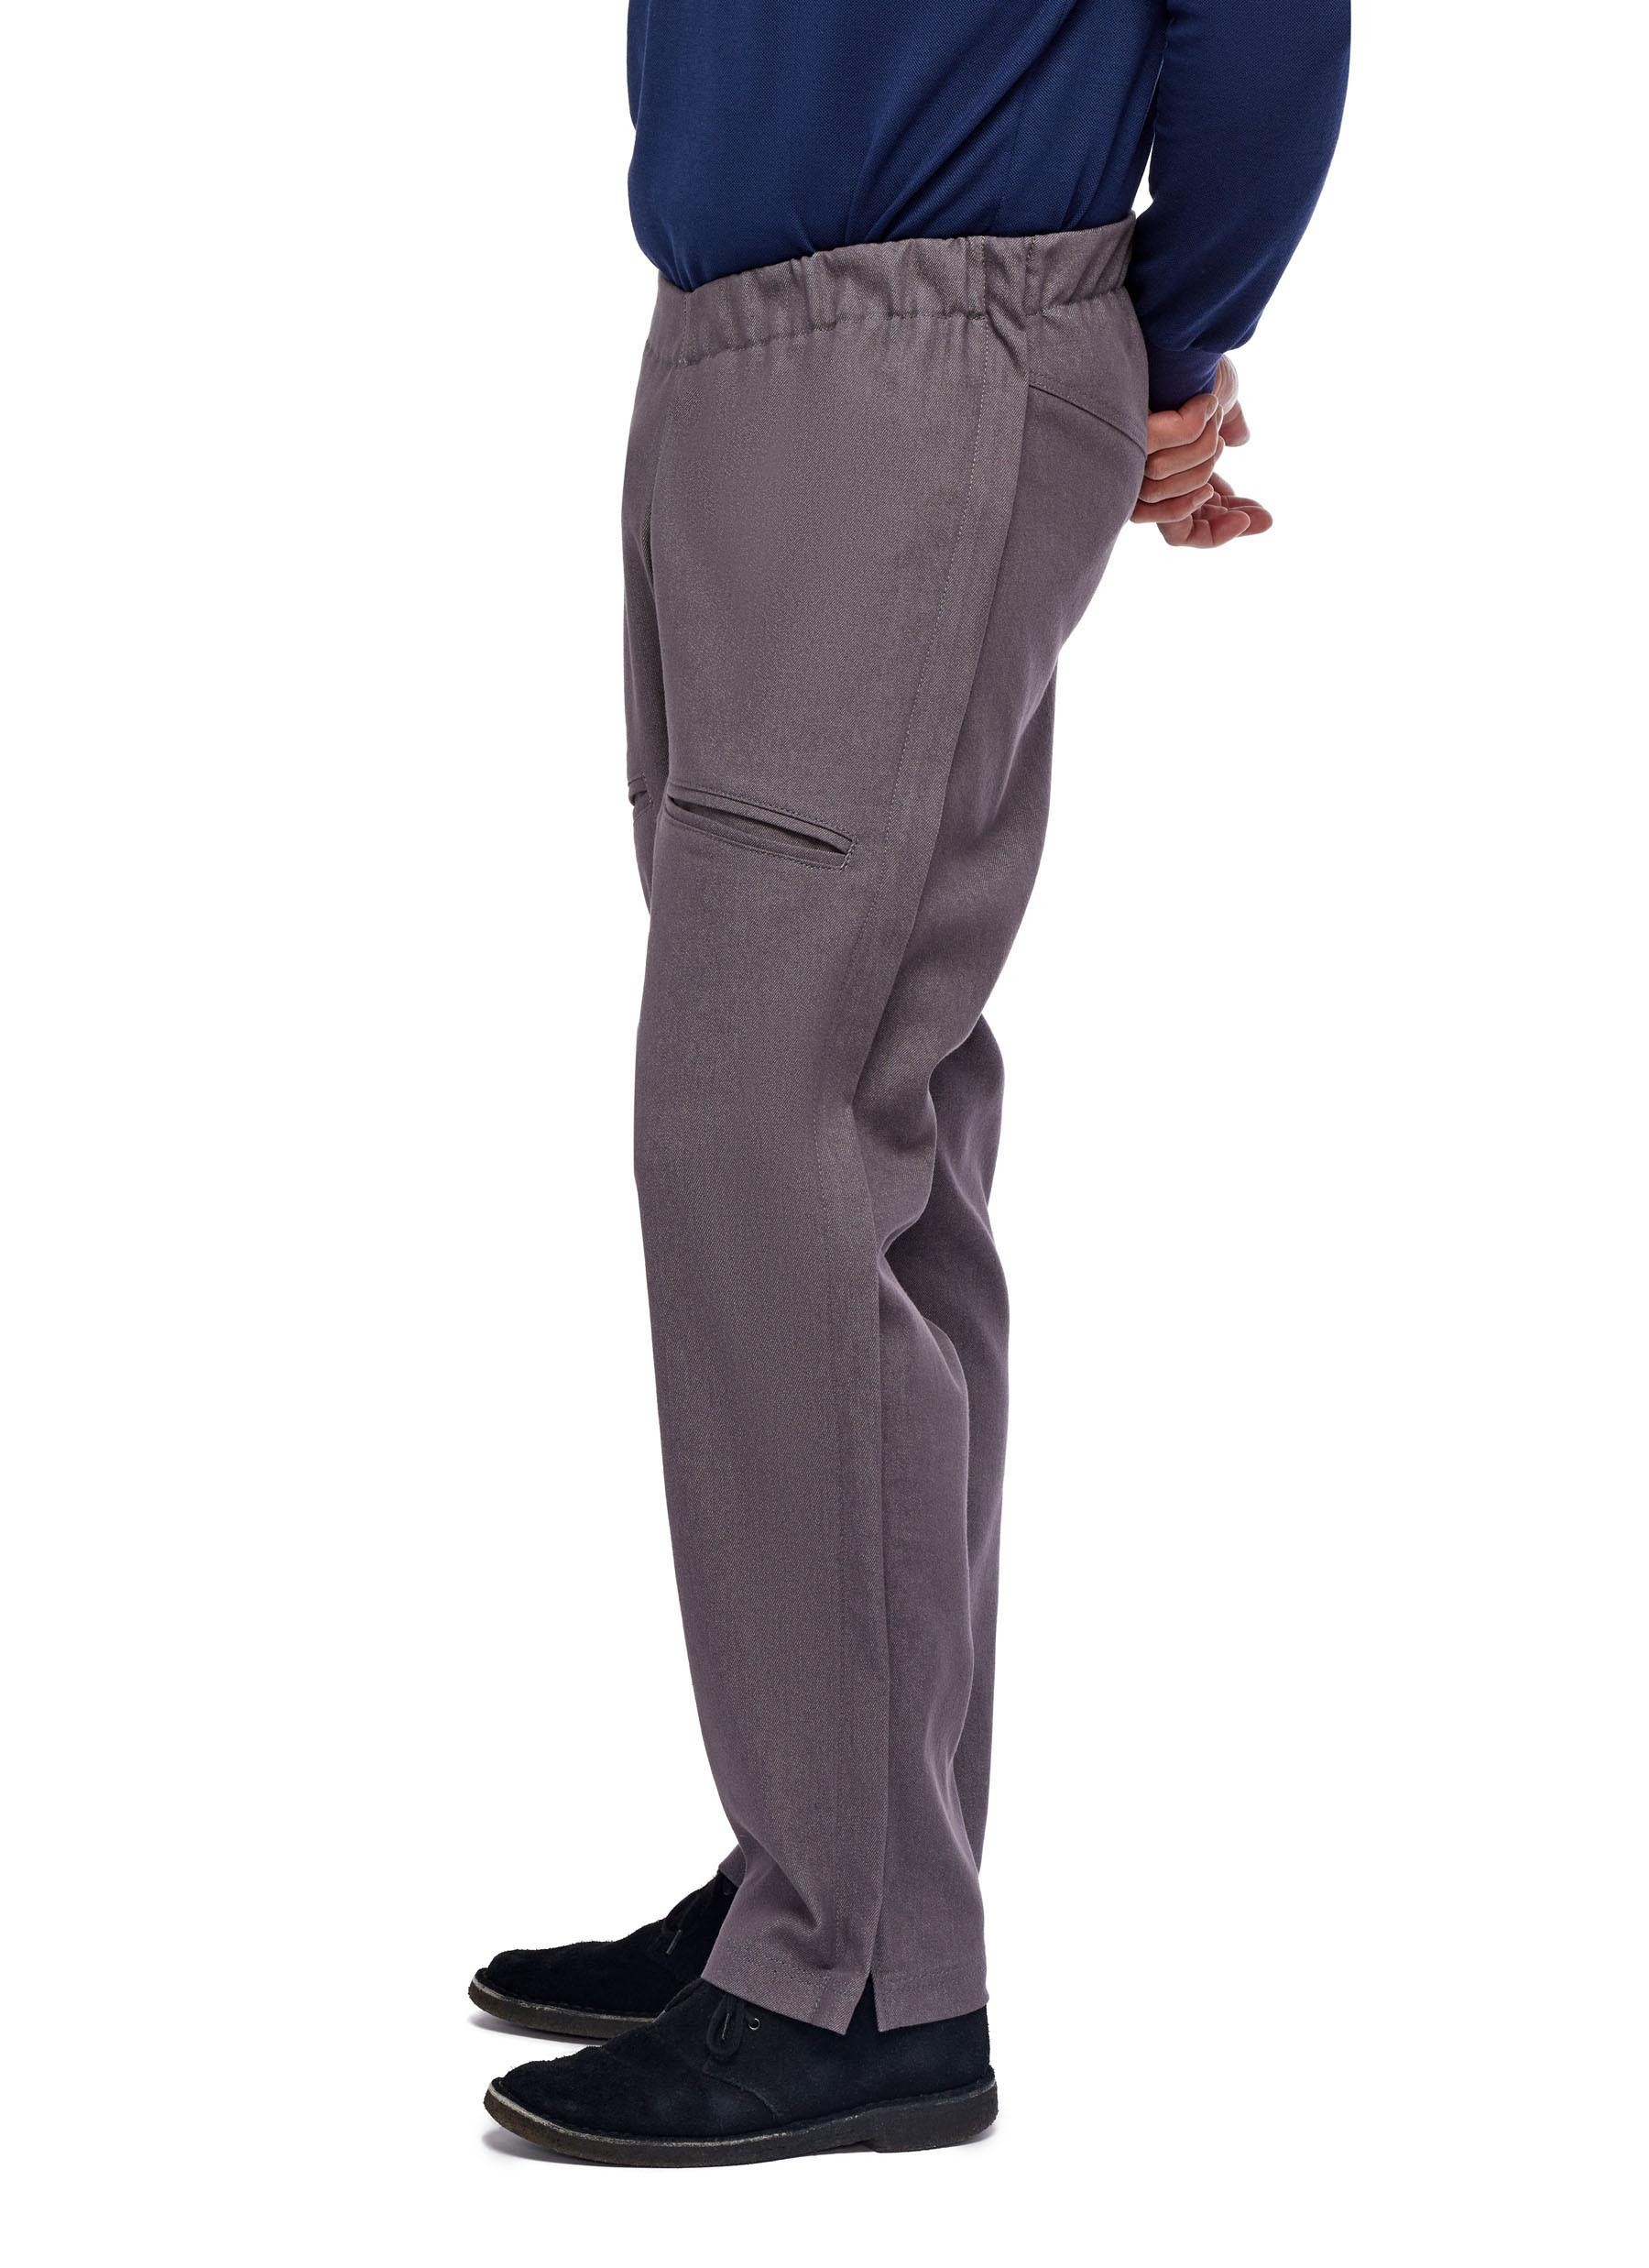 Nike Unlimited Men's Dri-FIT Zip Cuff Versatile Trousers. Nike LU